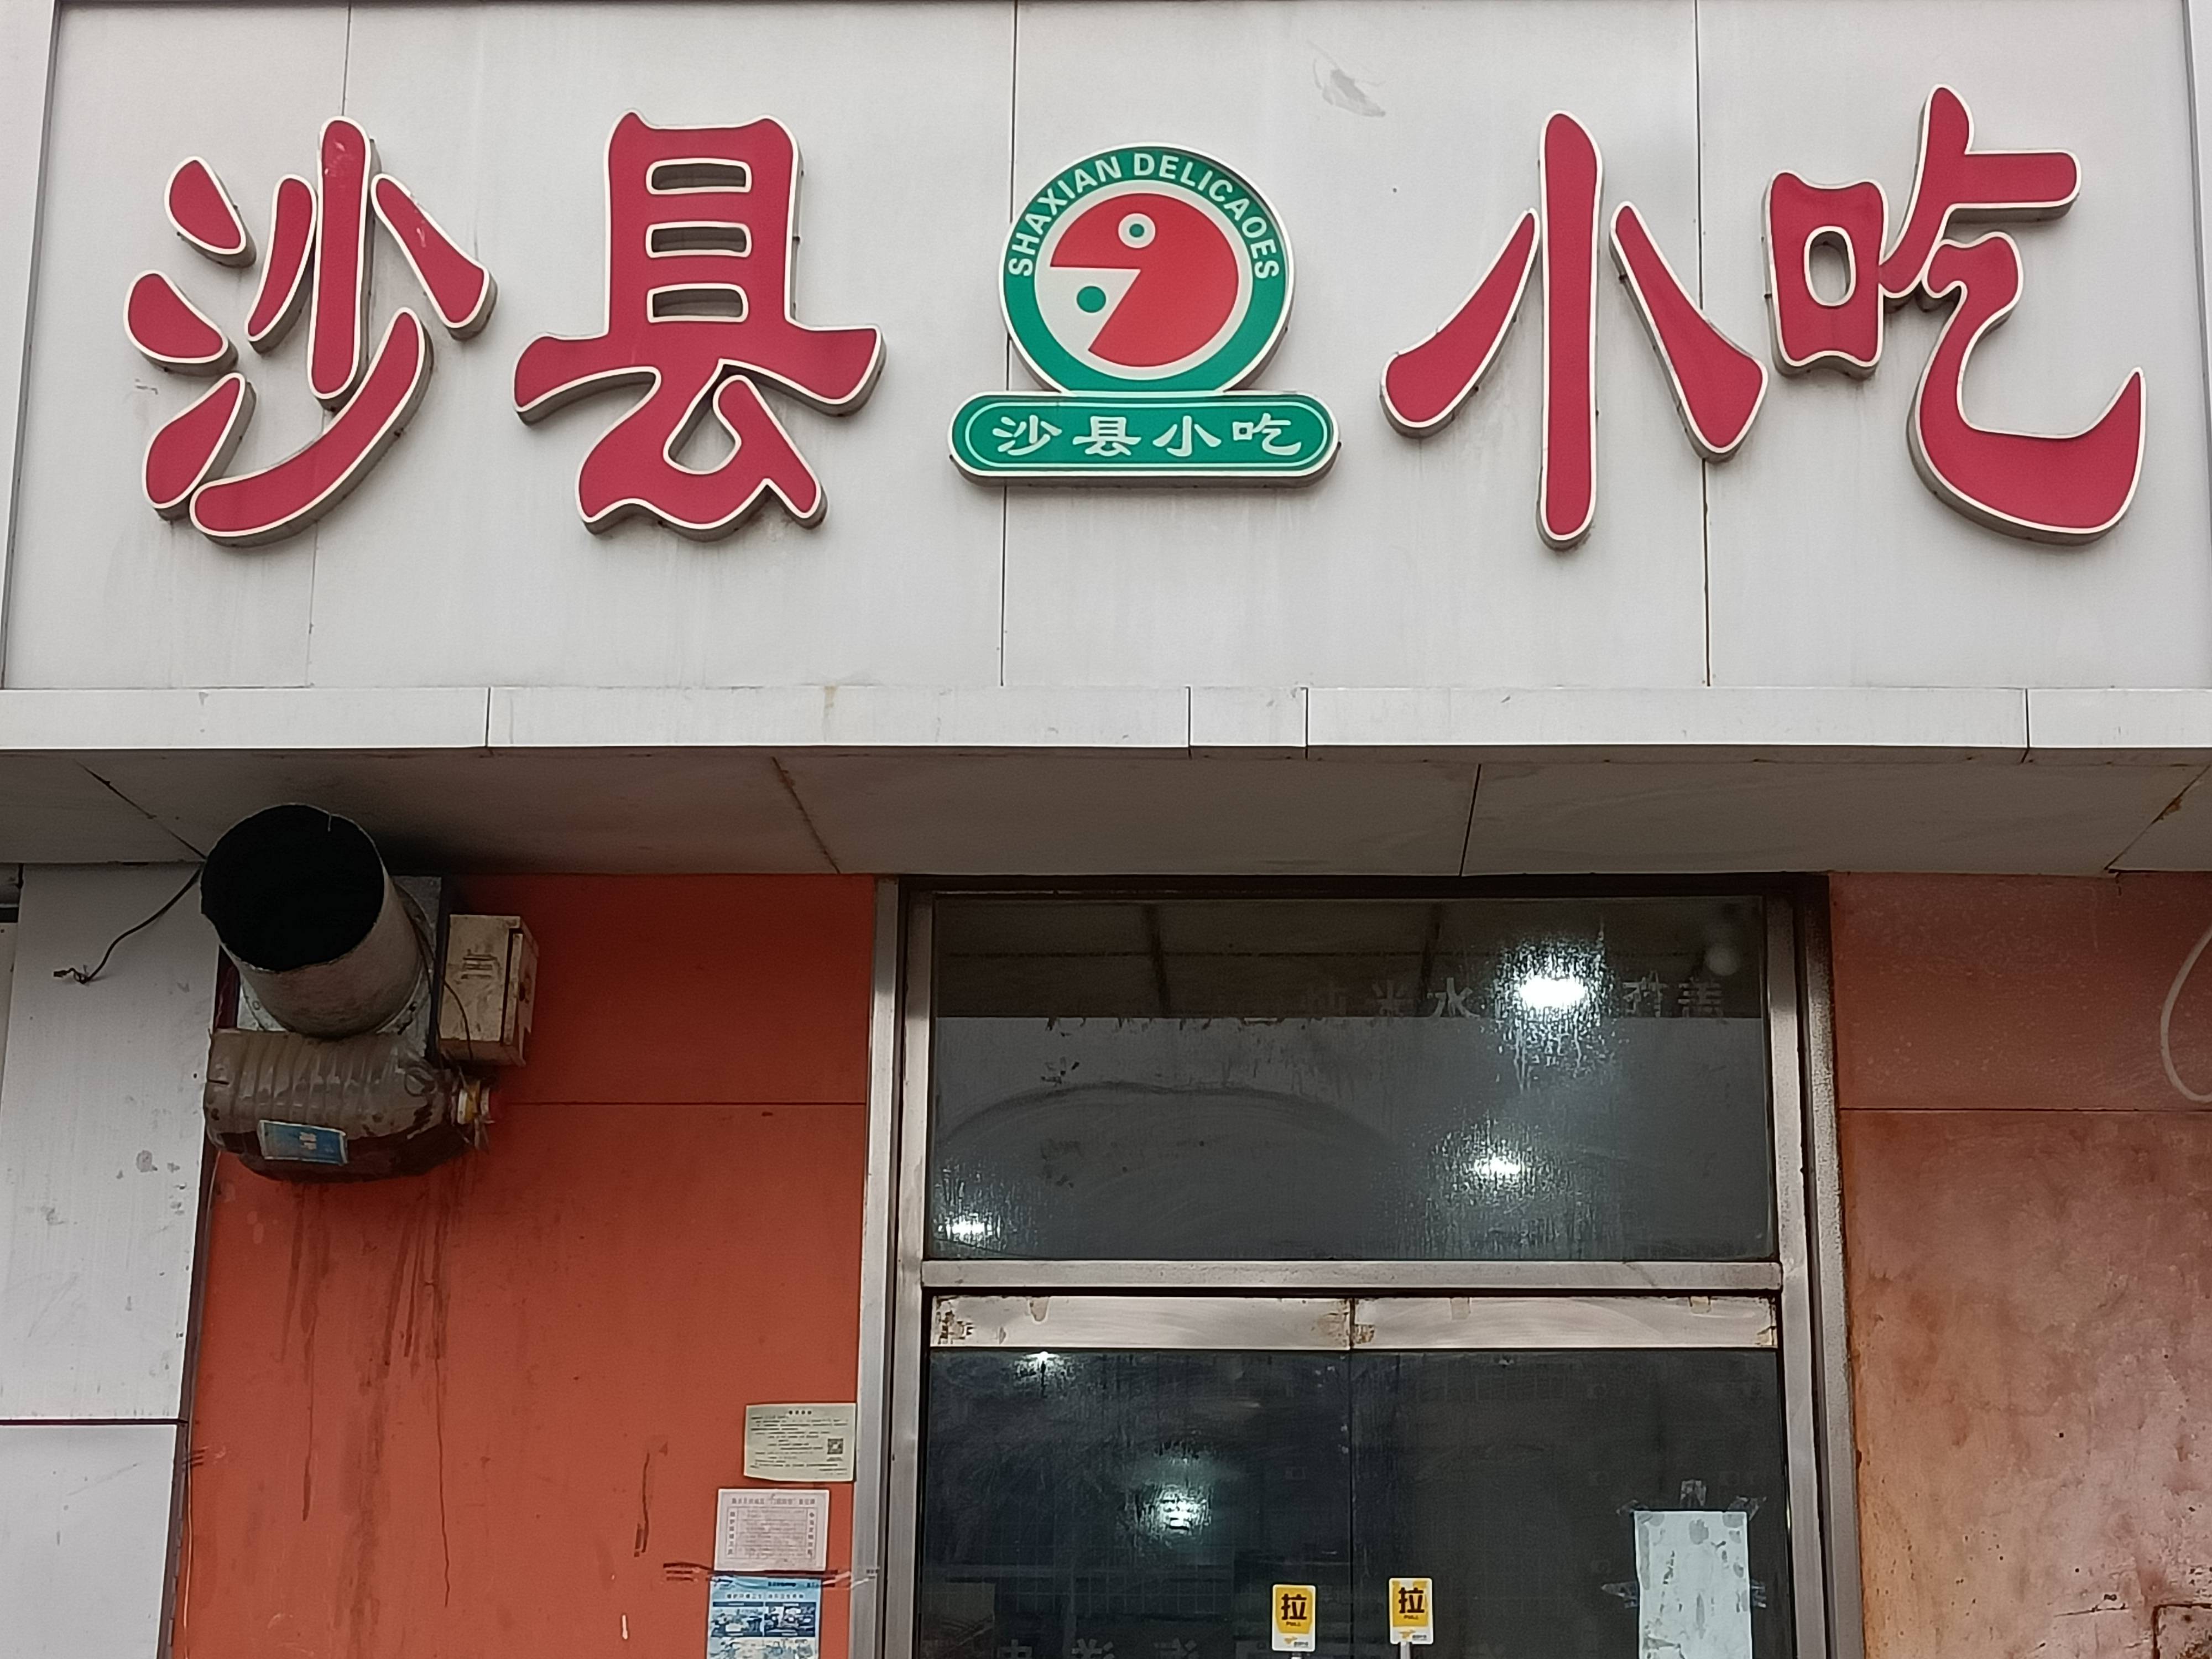 【携程美食林】广州老上海馄饨·面(长寿西路店)餐馆,老上海馄饨在广州有很多间，每间铺面都不大，但生意却挺好，晚上8点…